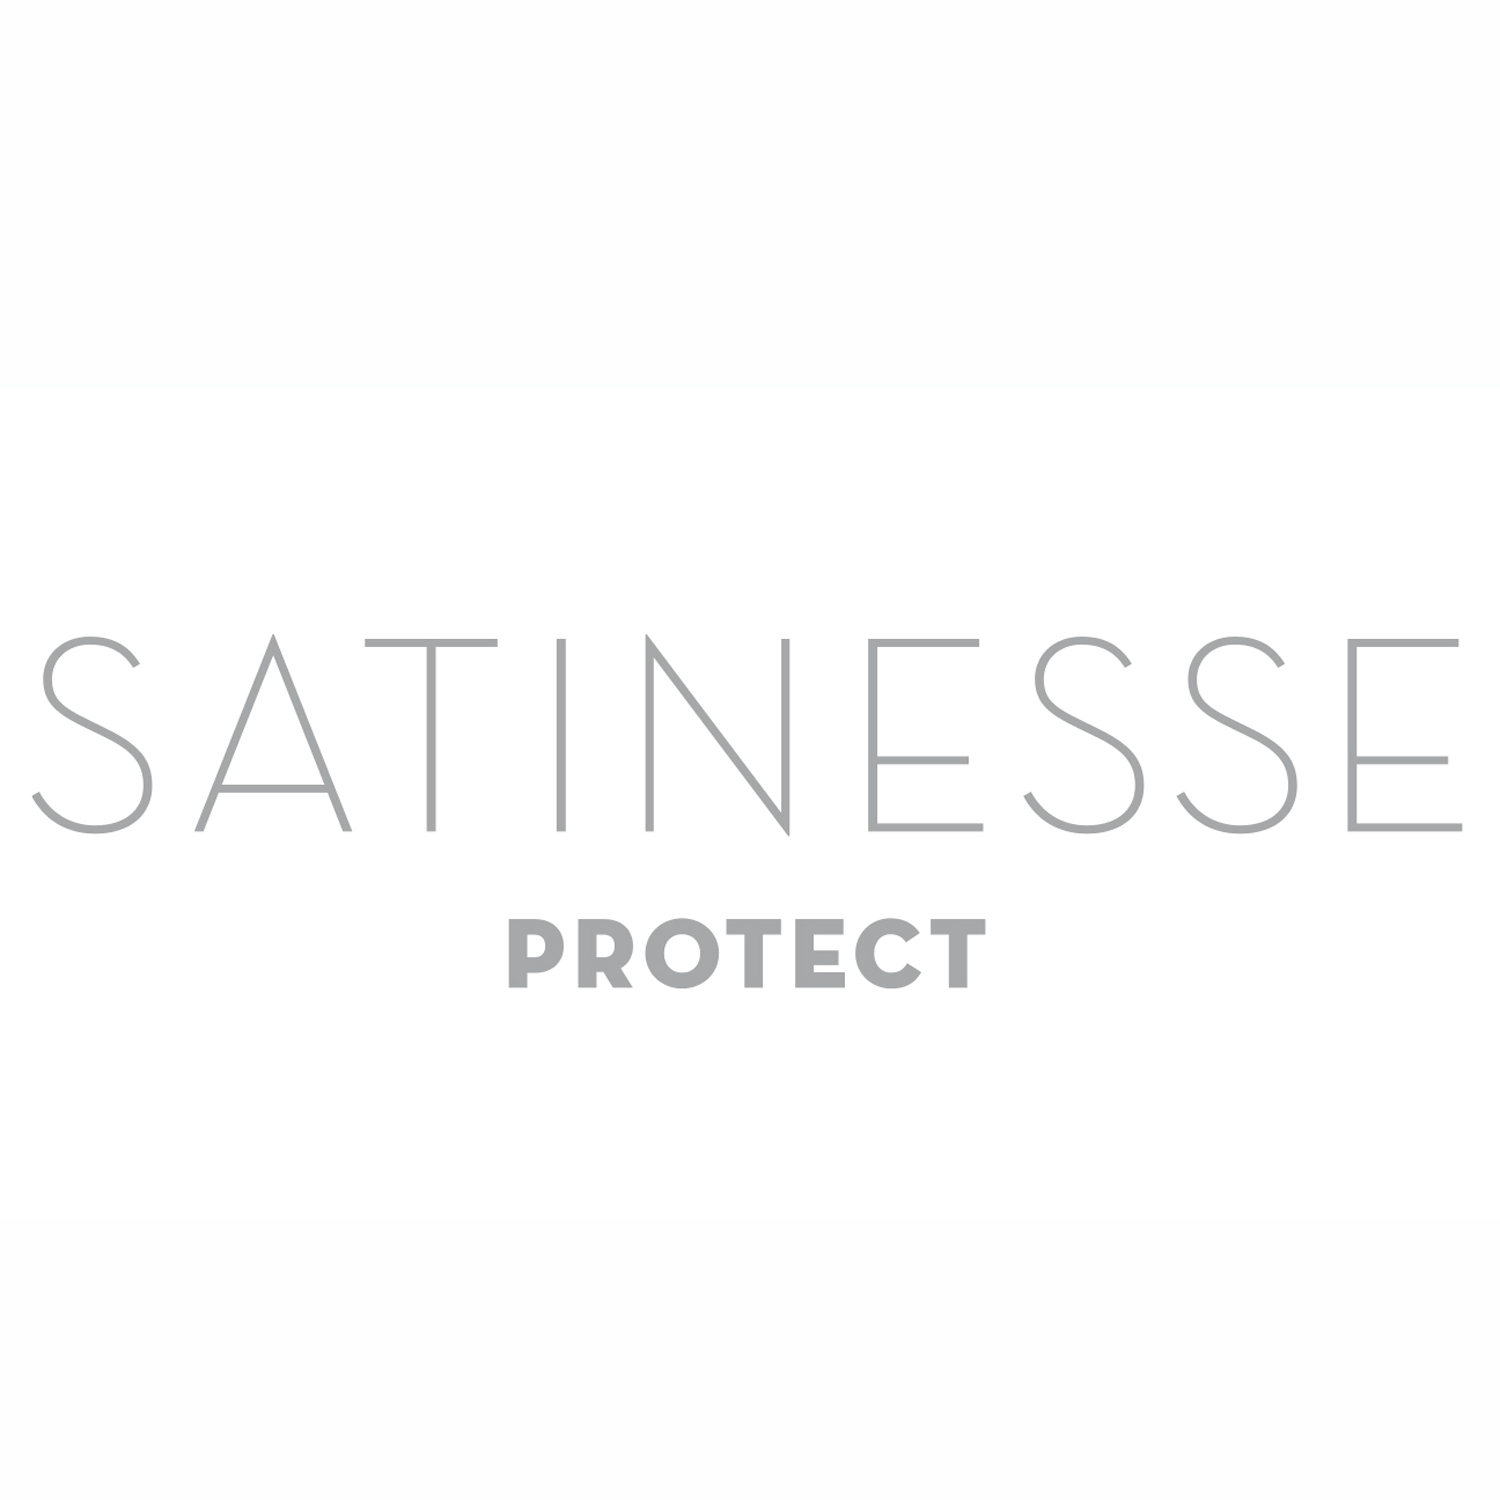 FORMESSE Matratzenschoner Satinesse Protect weiß 90x200cm